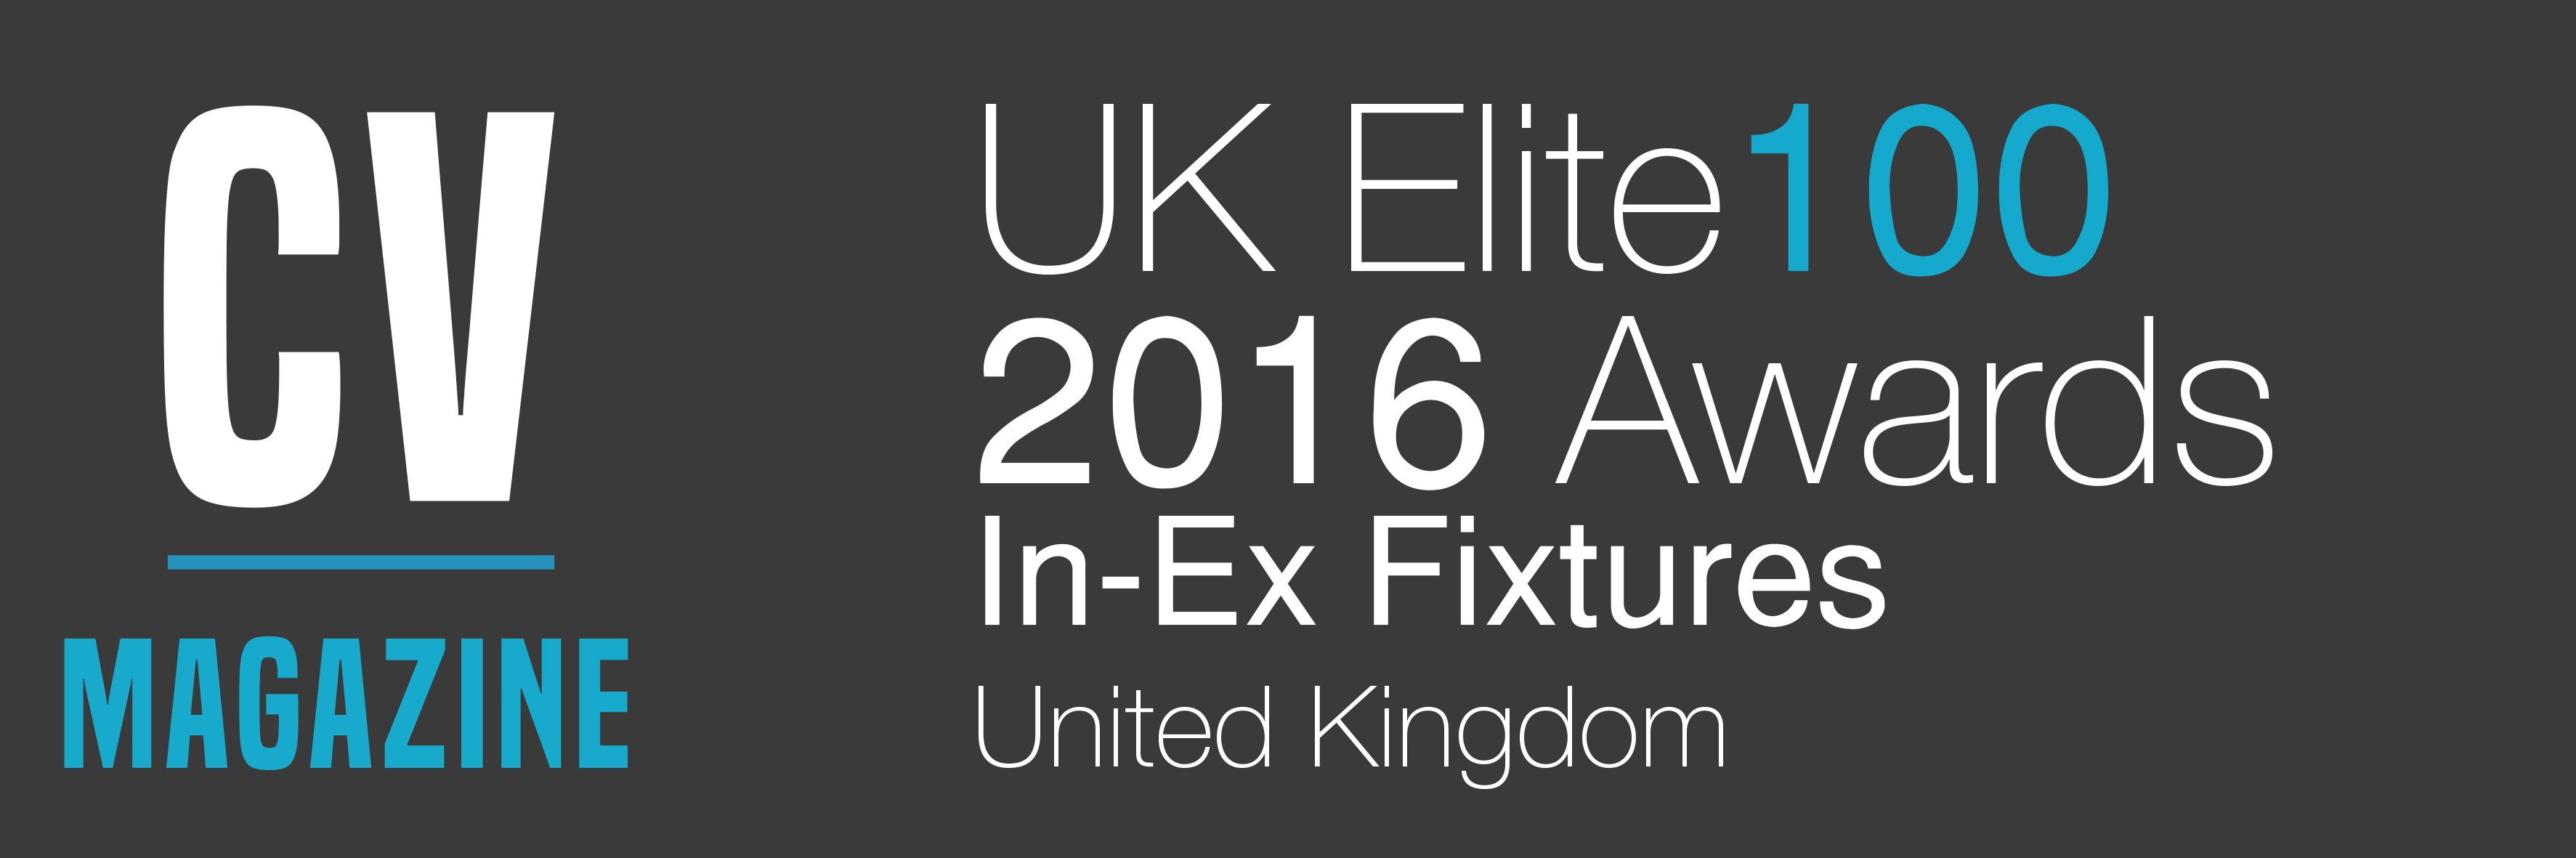 In-Ex Fixtures - UK Elite 100 Awards (1608AC93) Winners Logo